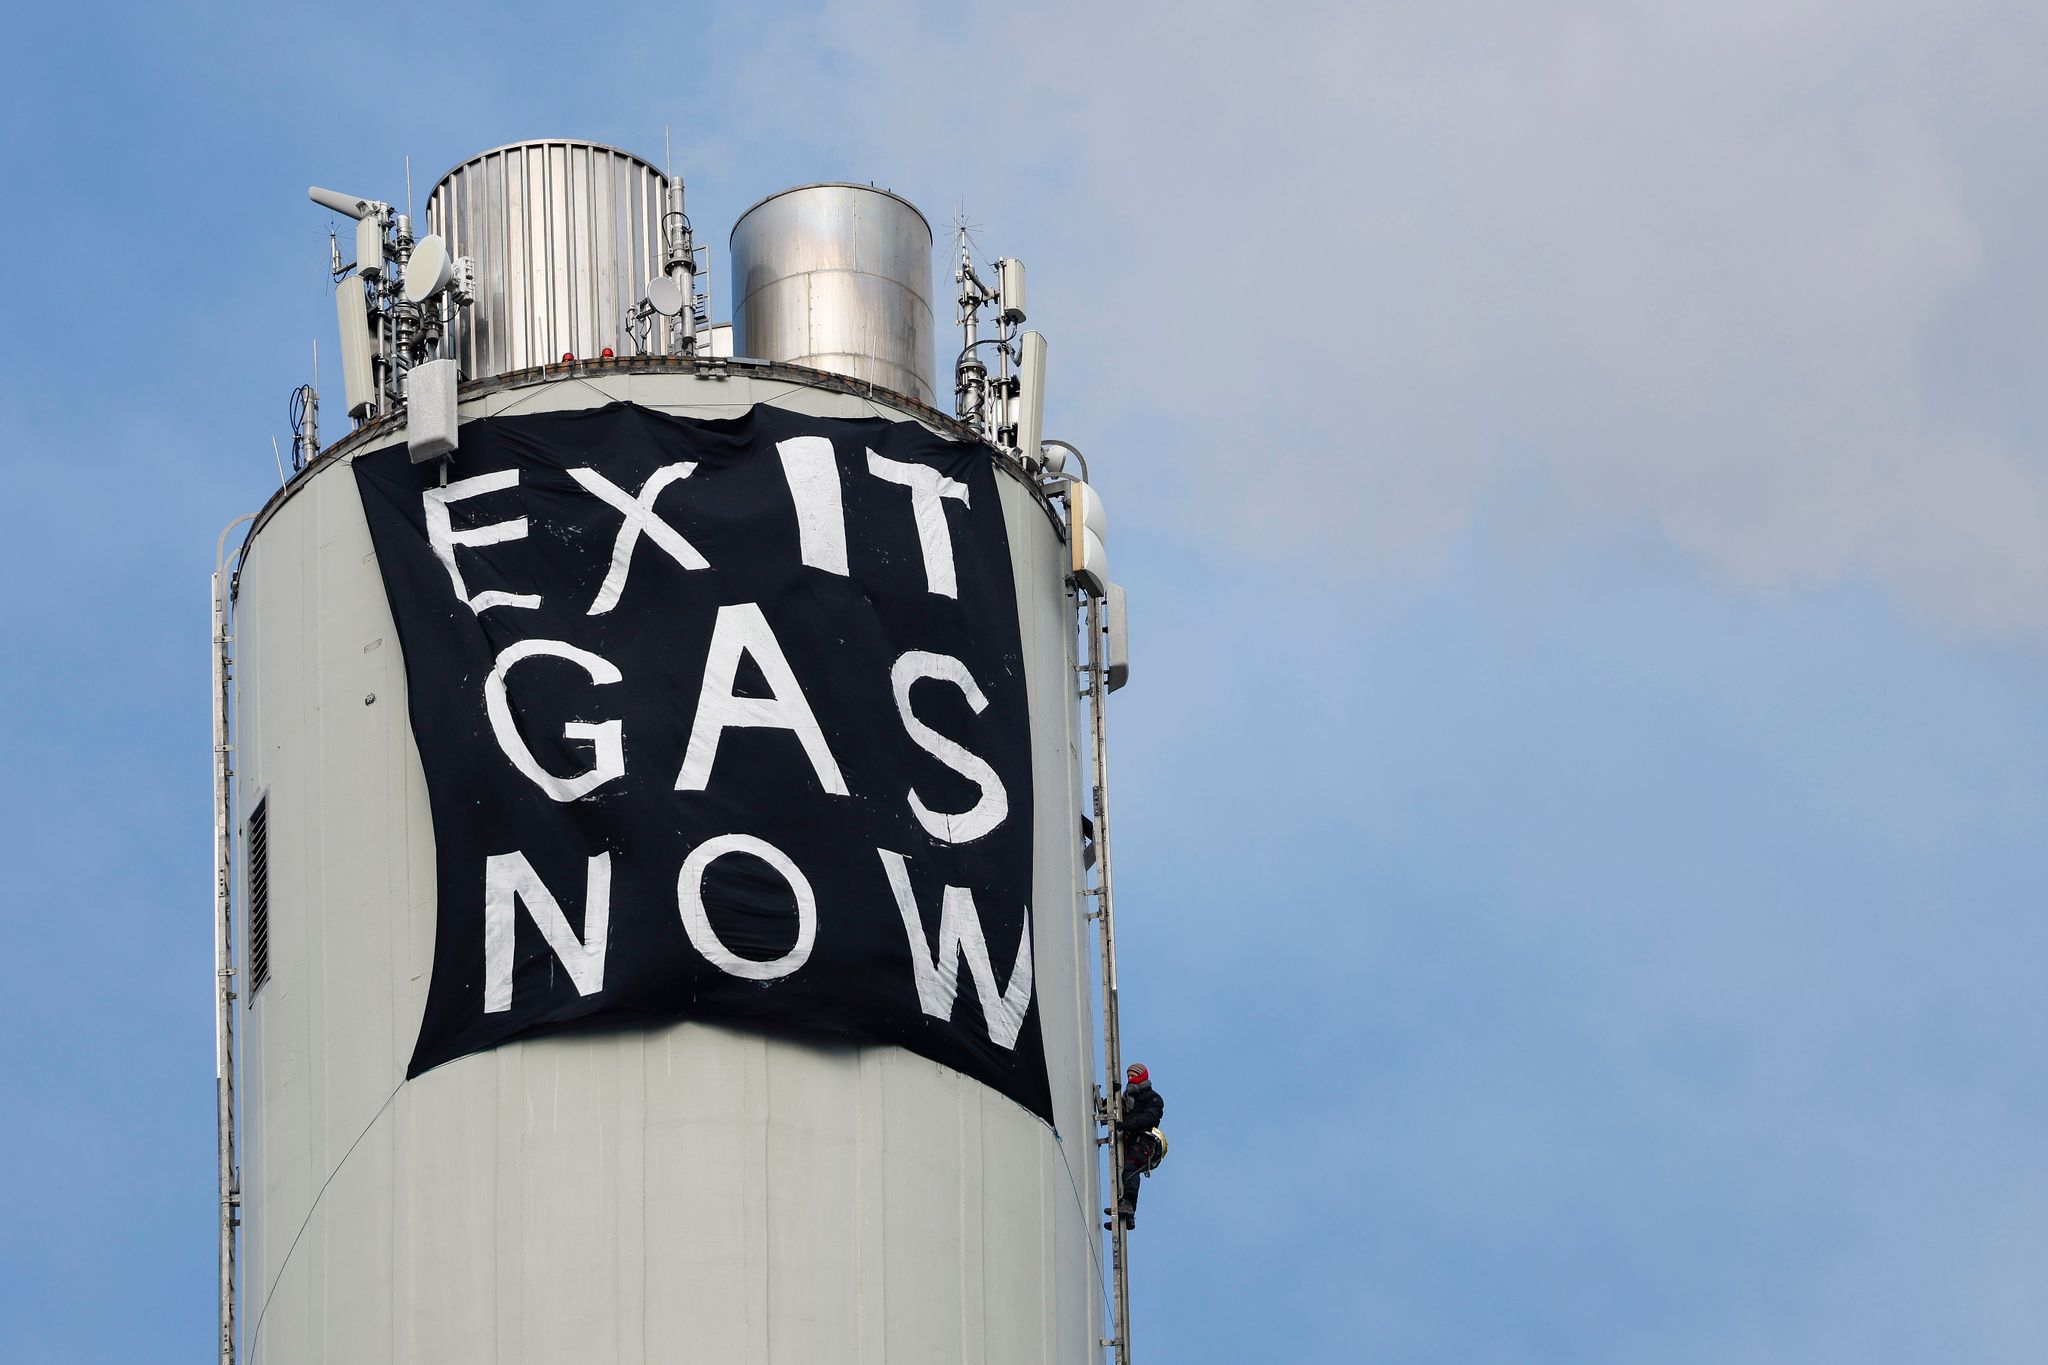 Ein Klimaaktivist befestigt ein Protestbanner „EXIT GAS NOW“ am Schornstein des Erdgaskraftwerk in Erlangen.